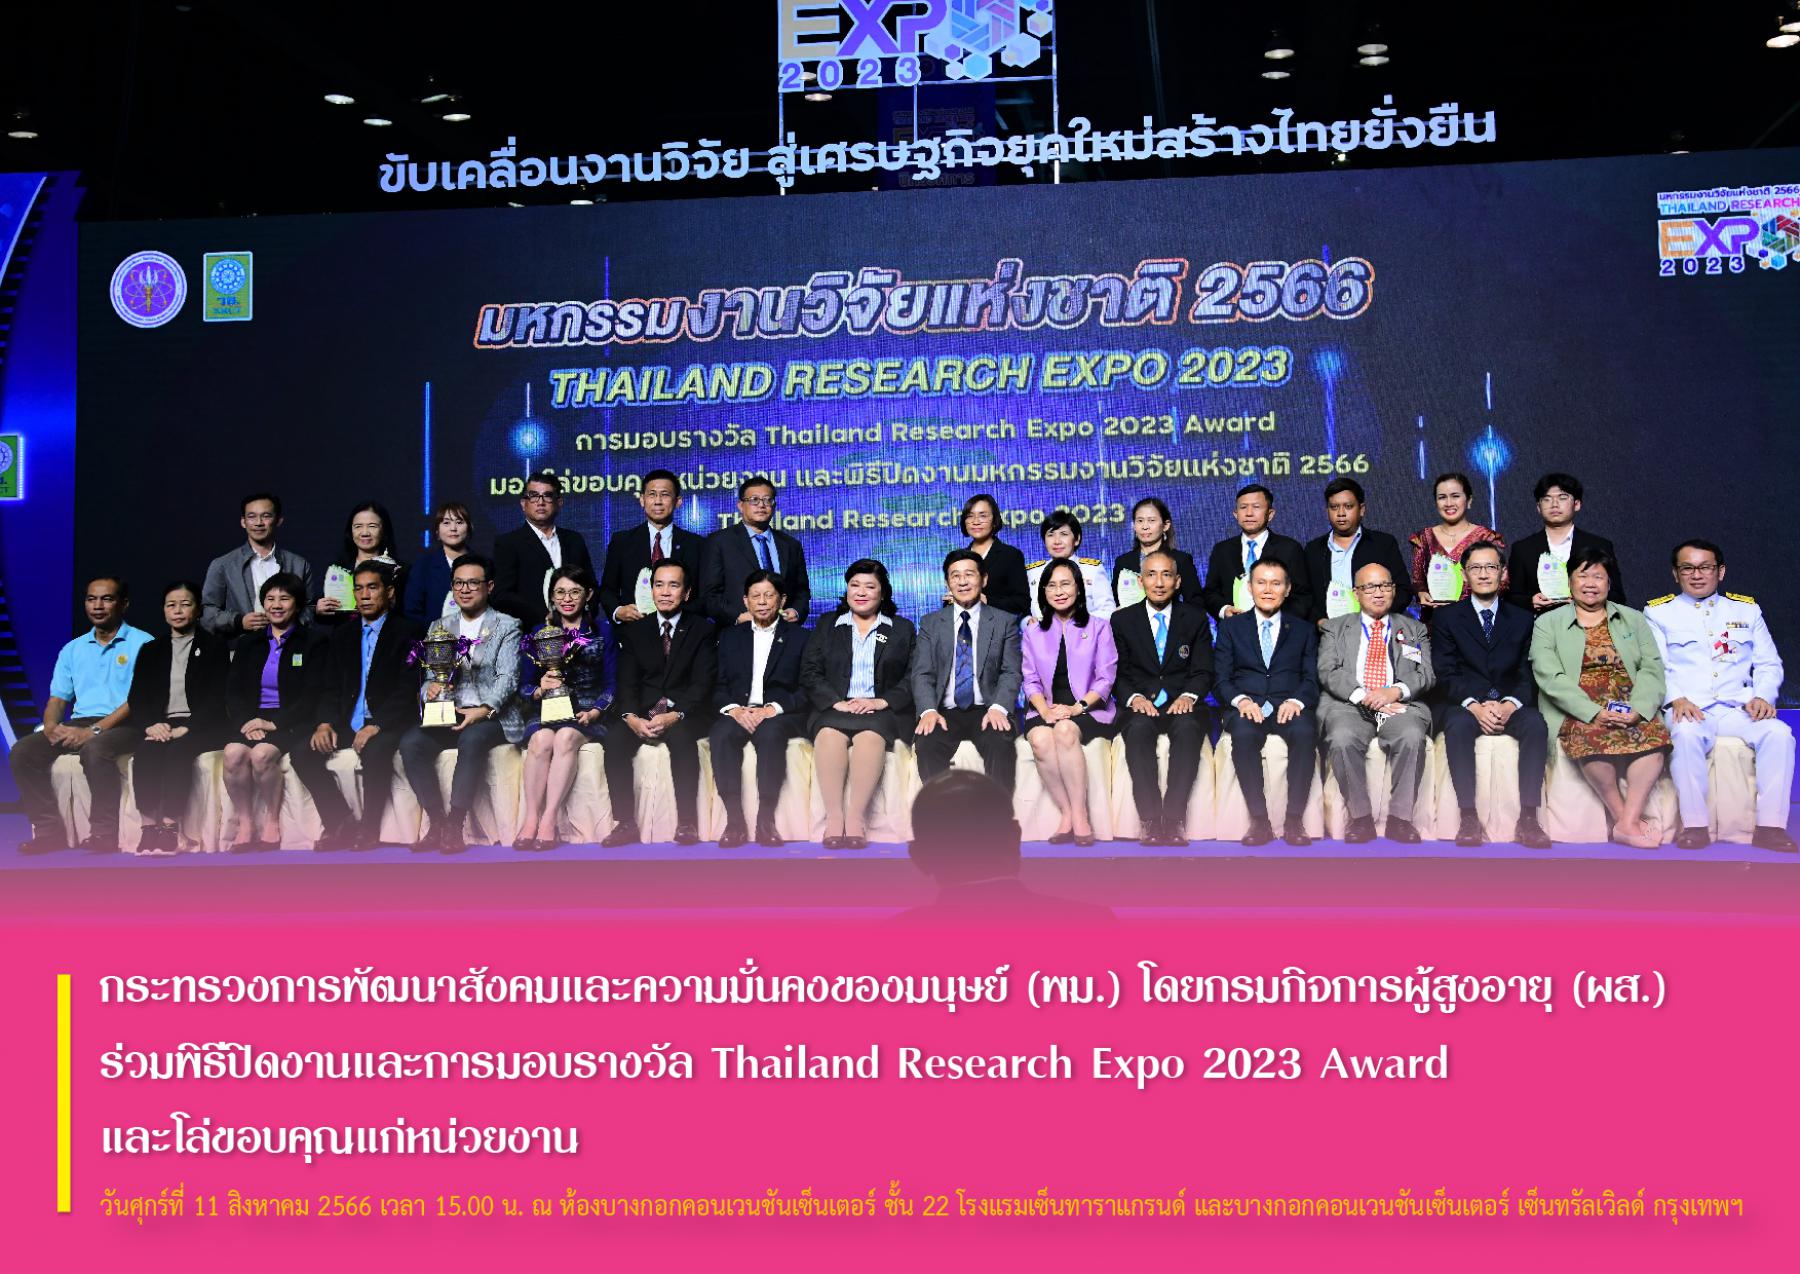 กระทรวงการพัฒนาสังคมและความมั่นคงของมนุษย์ (พม.) โดยกรมกิจการผู้สูงอายุ (ผส.) ร่วมพิธีปิดงานและการมอบรางวัล Thailand Research Expo 2023 Award และโล่ขอบคุณแก่หน่วยงาน